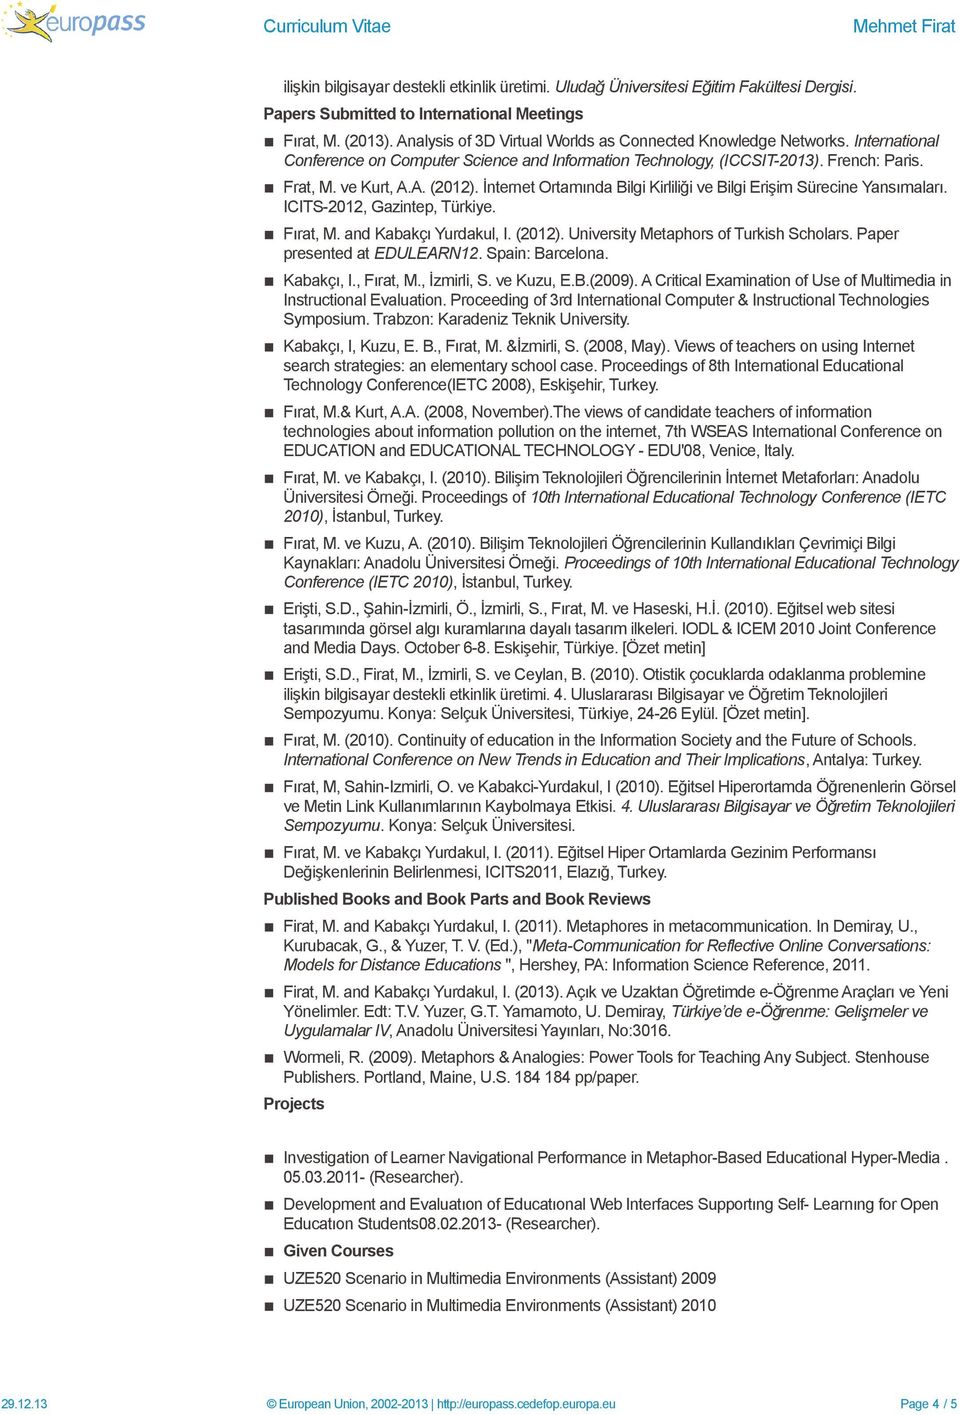 İnternet Ortamında Bilgi Kirliliği ve Bilgi Erişim Sürecine Yansımaları. ICITS-2012, Gazintep, Türkiye. Fırat, M. and Kabakçı Yurdakul, I. (2012). University Metaphors of Turkish Scholars.